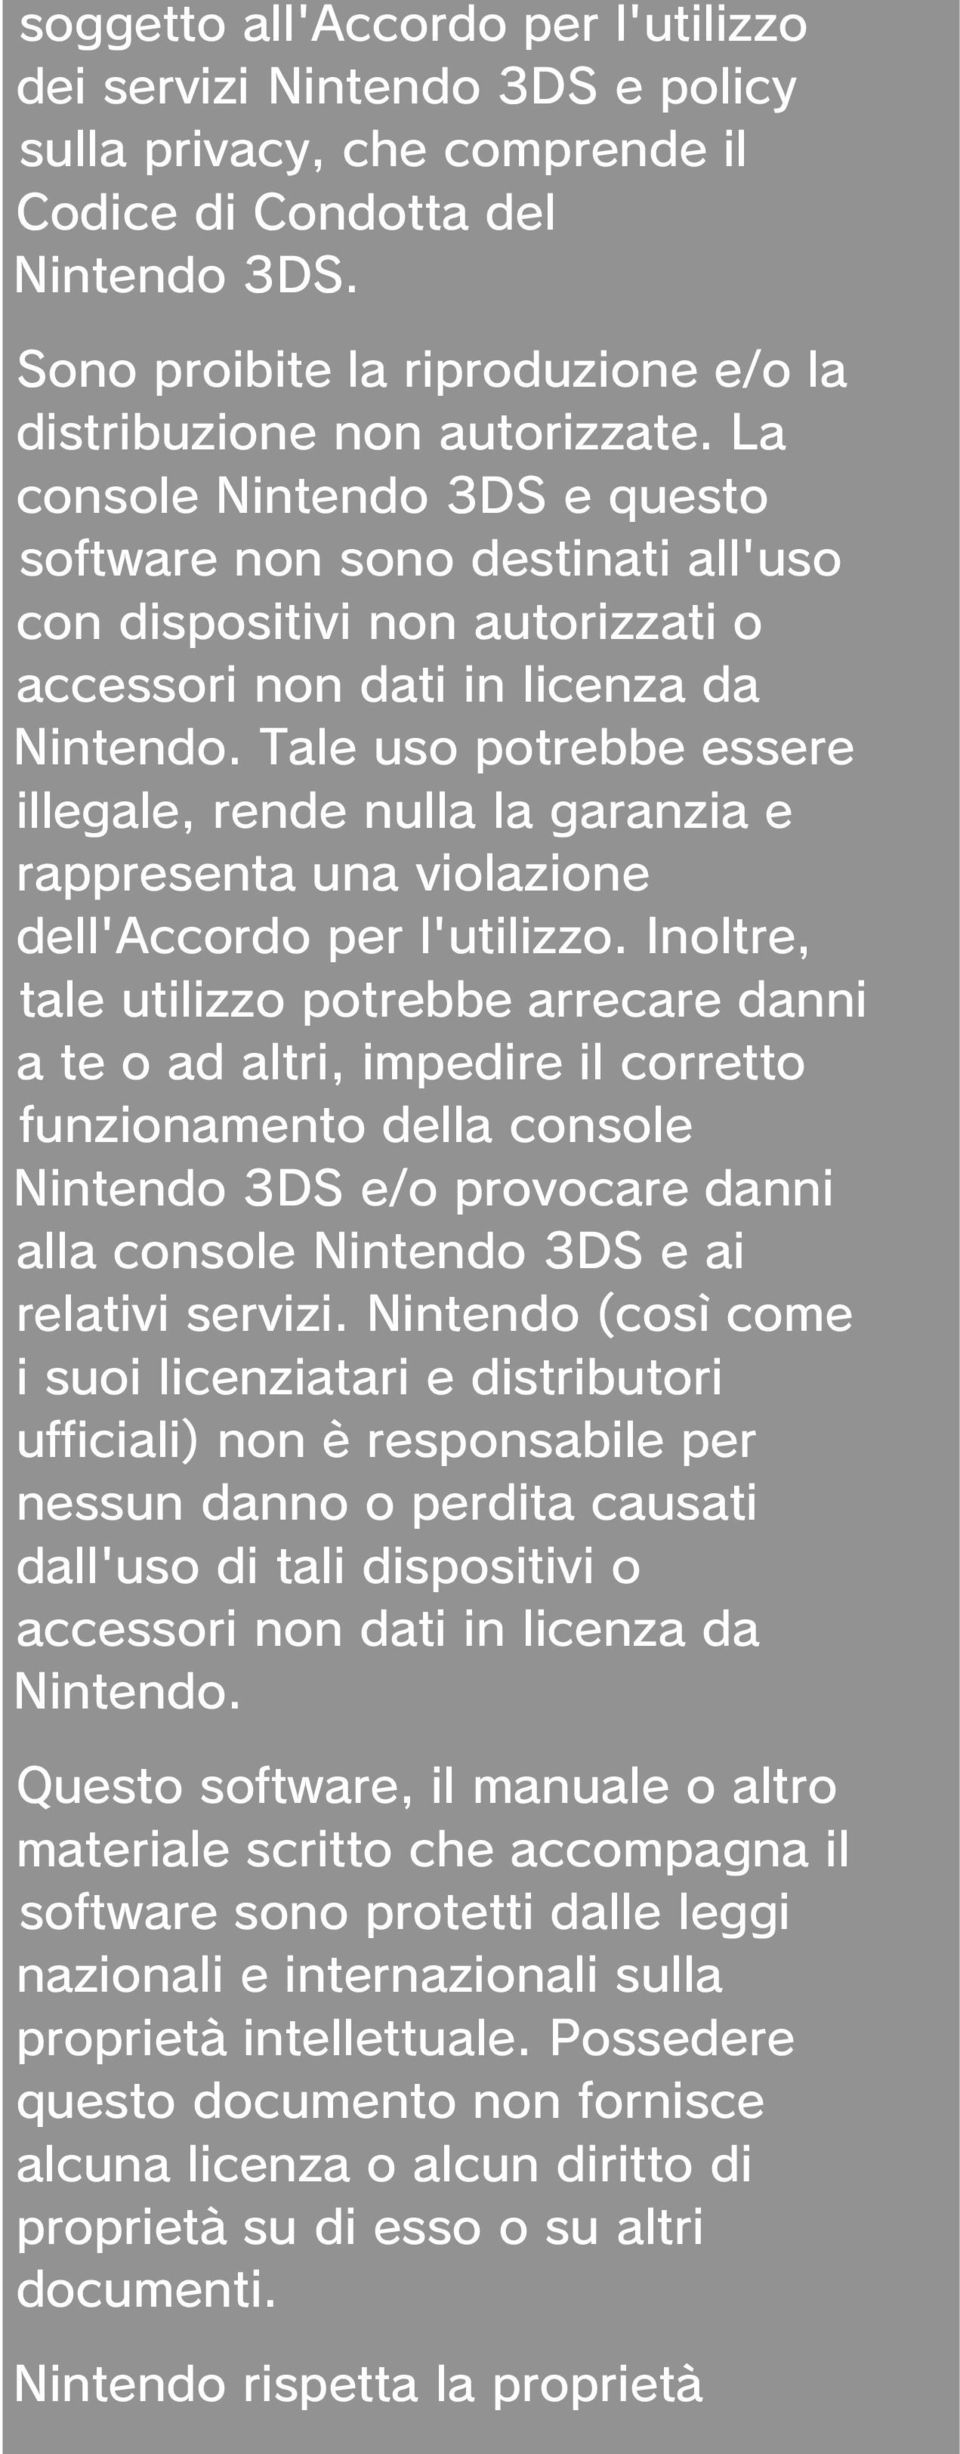 La console Nintendo 3DS e questo software non sono destinati all'uso con dispositivi non autorizzati o accessori non dati in licenza da Nintendo.